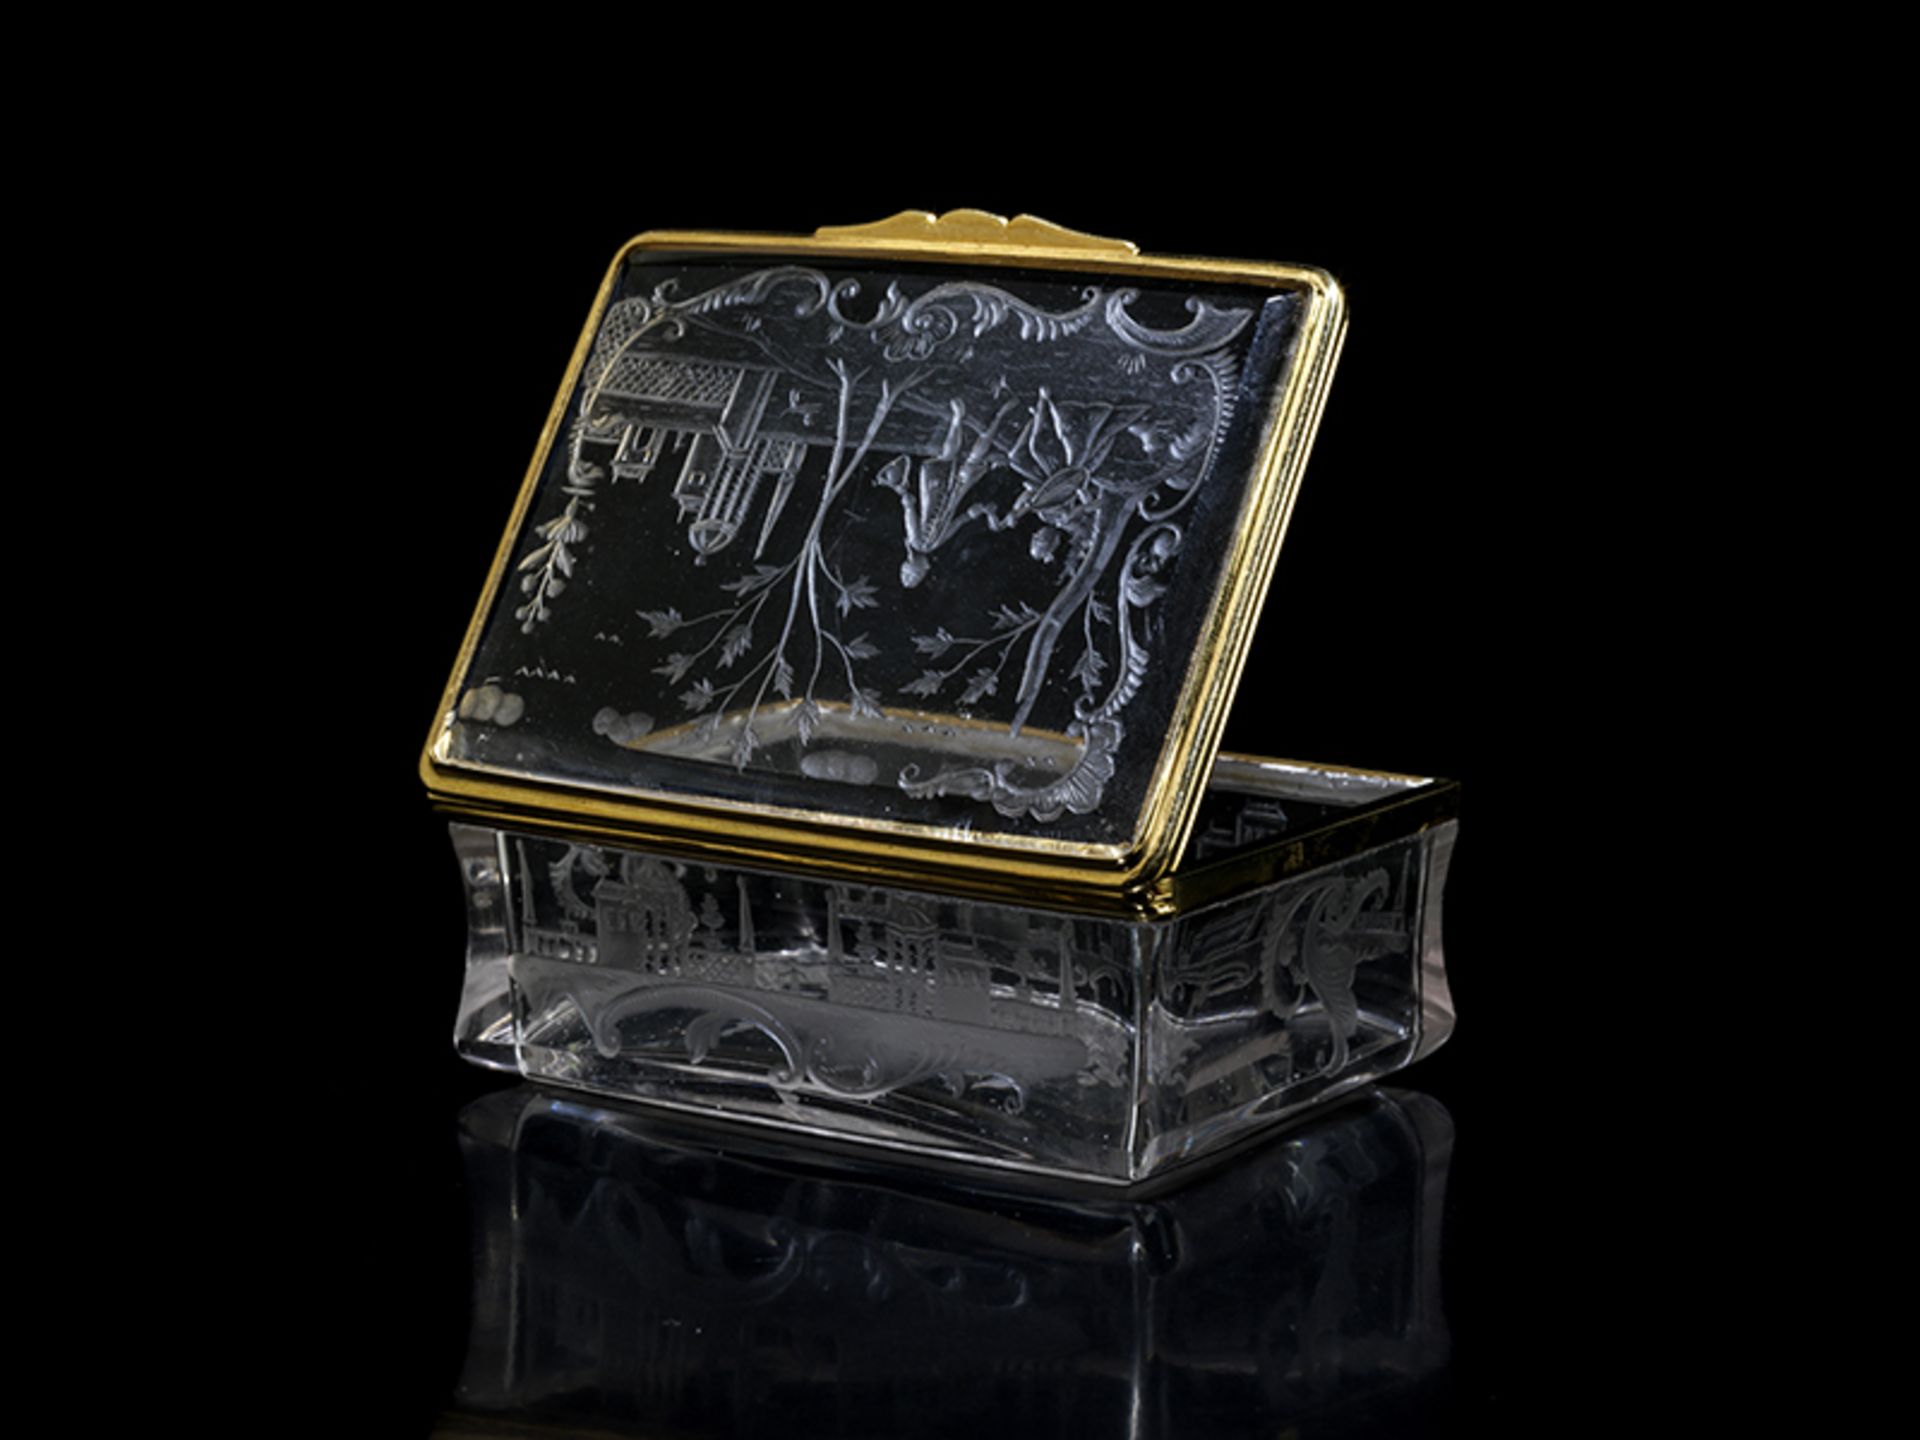 Barocke Bergkristalldose 3,3 x 8,3 x 6,2 cm. Gewicht: 160 g. Deutschland, um 1735/40. - Bild 2 aus 4